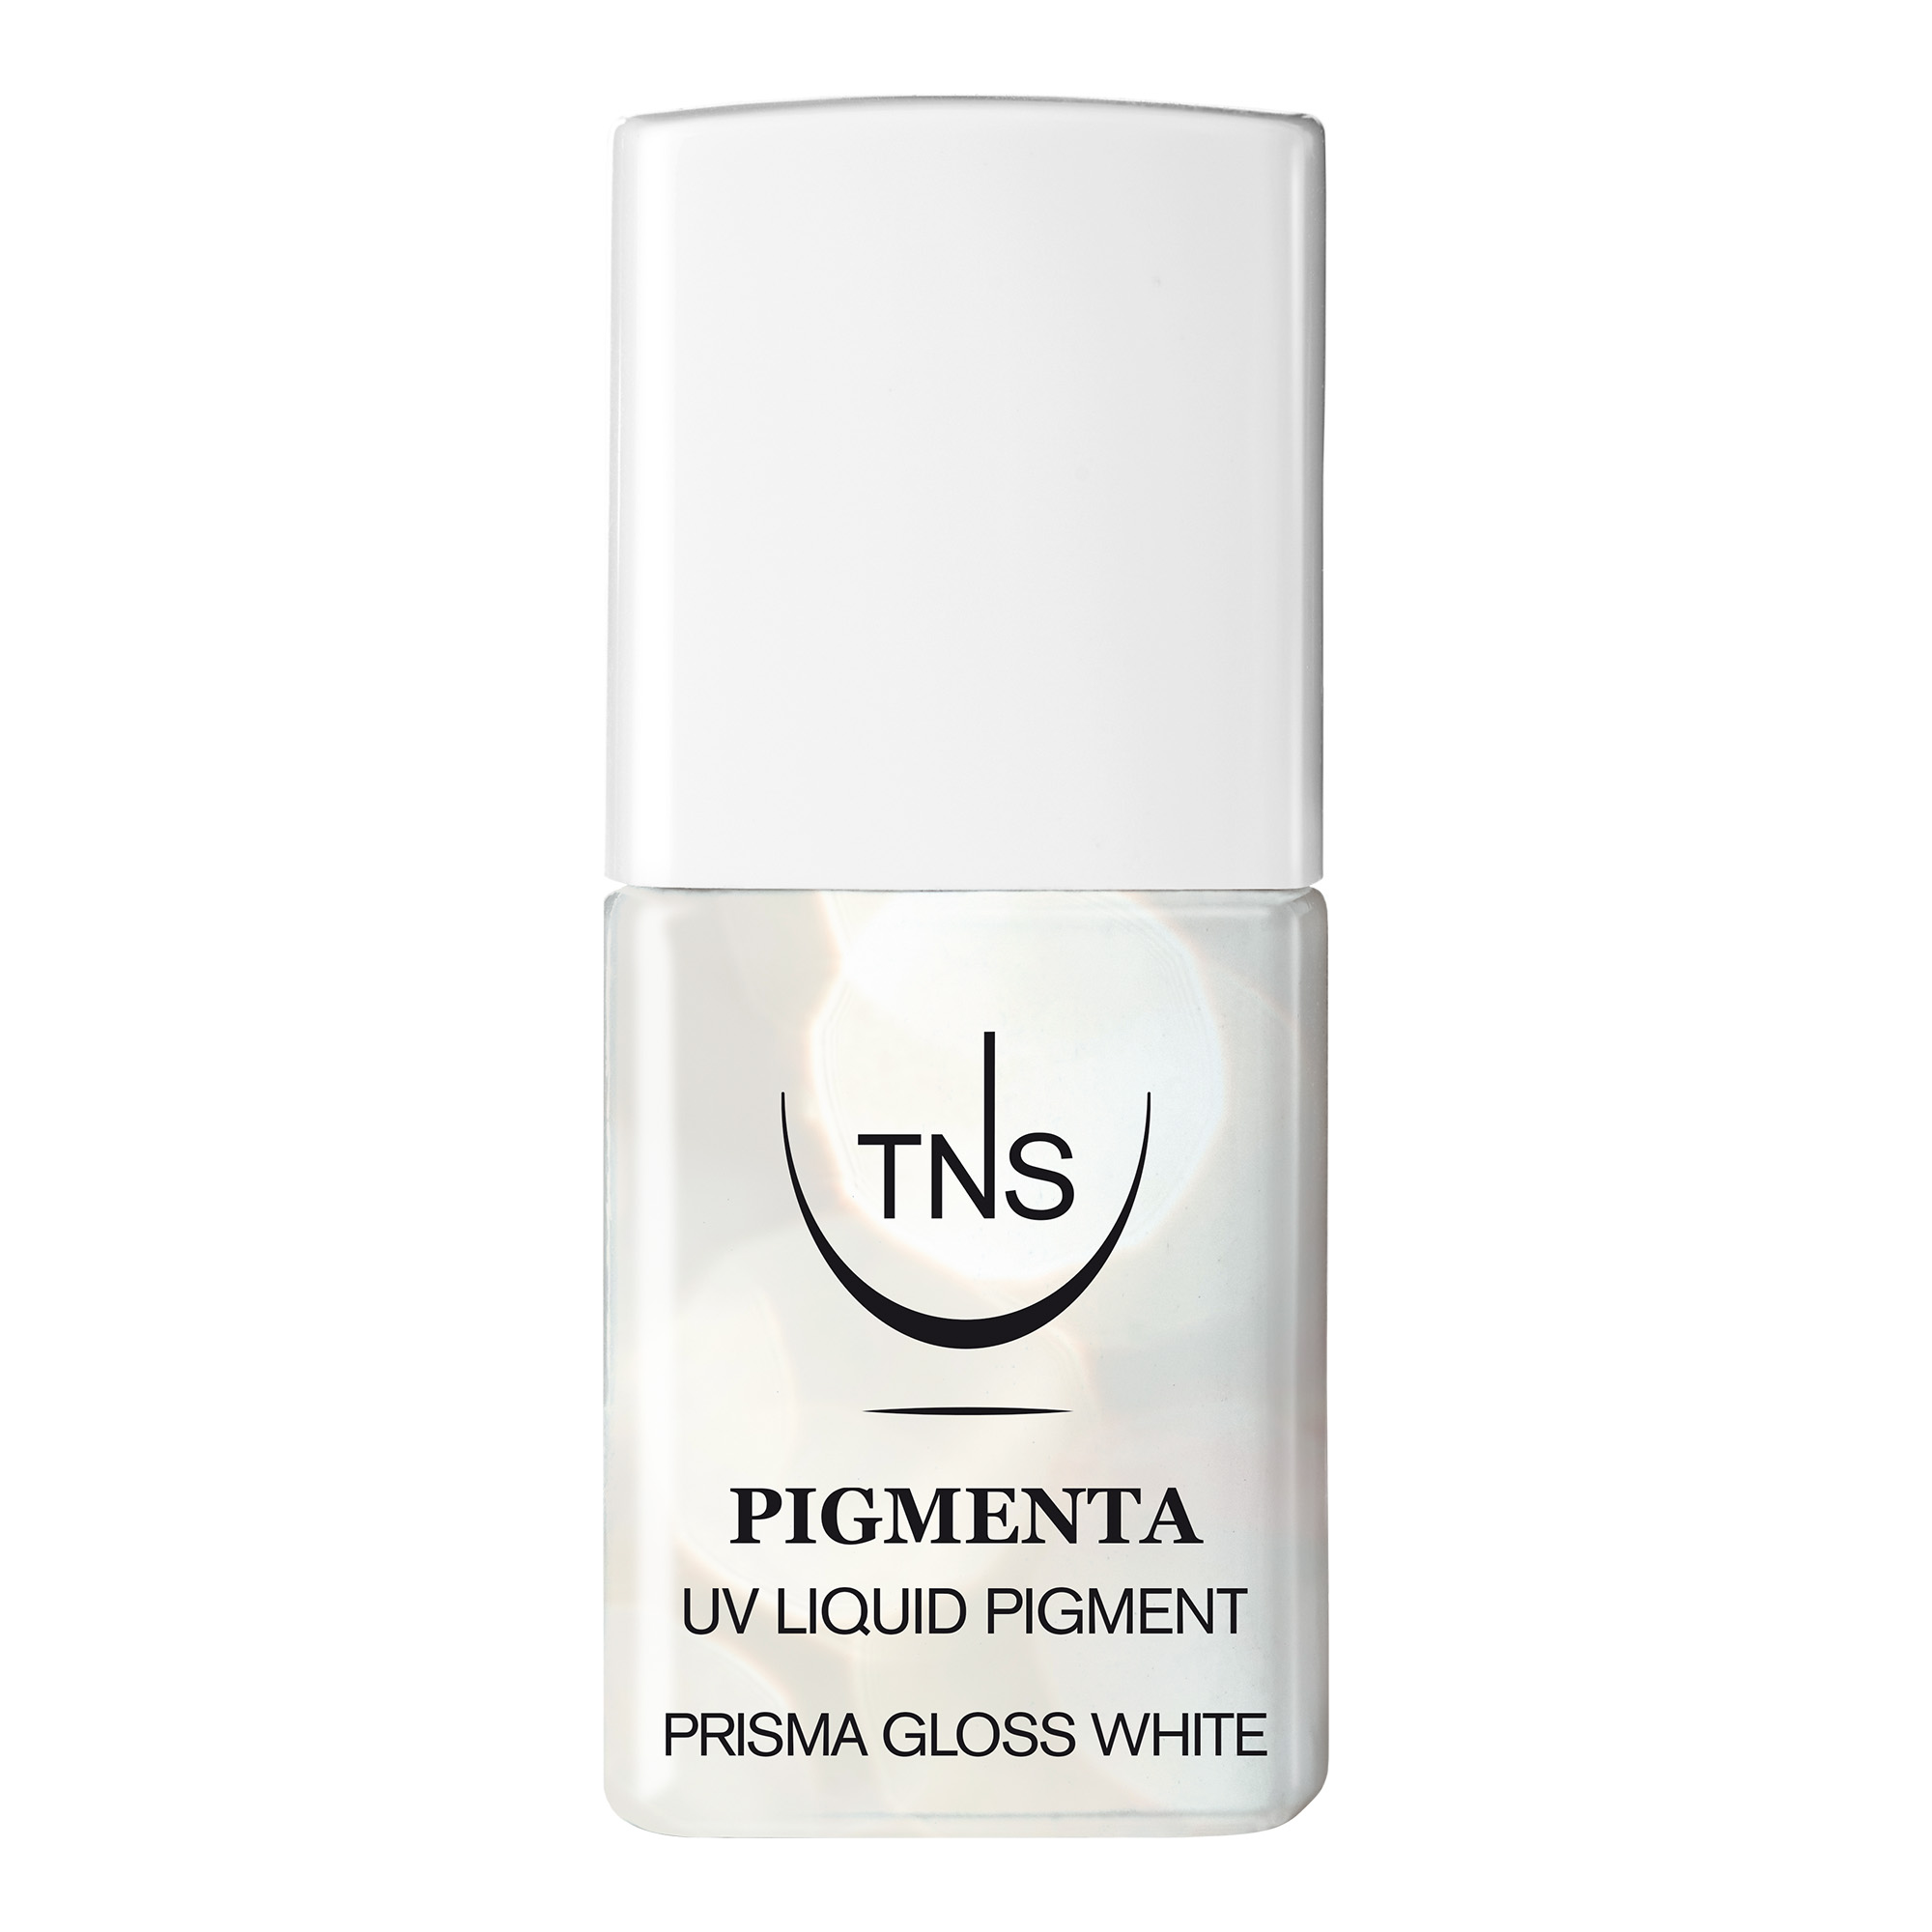 Prisma Gloss White iridescent UV Liquid Pigment 10 ml Pigmenta TNS